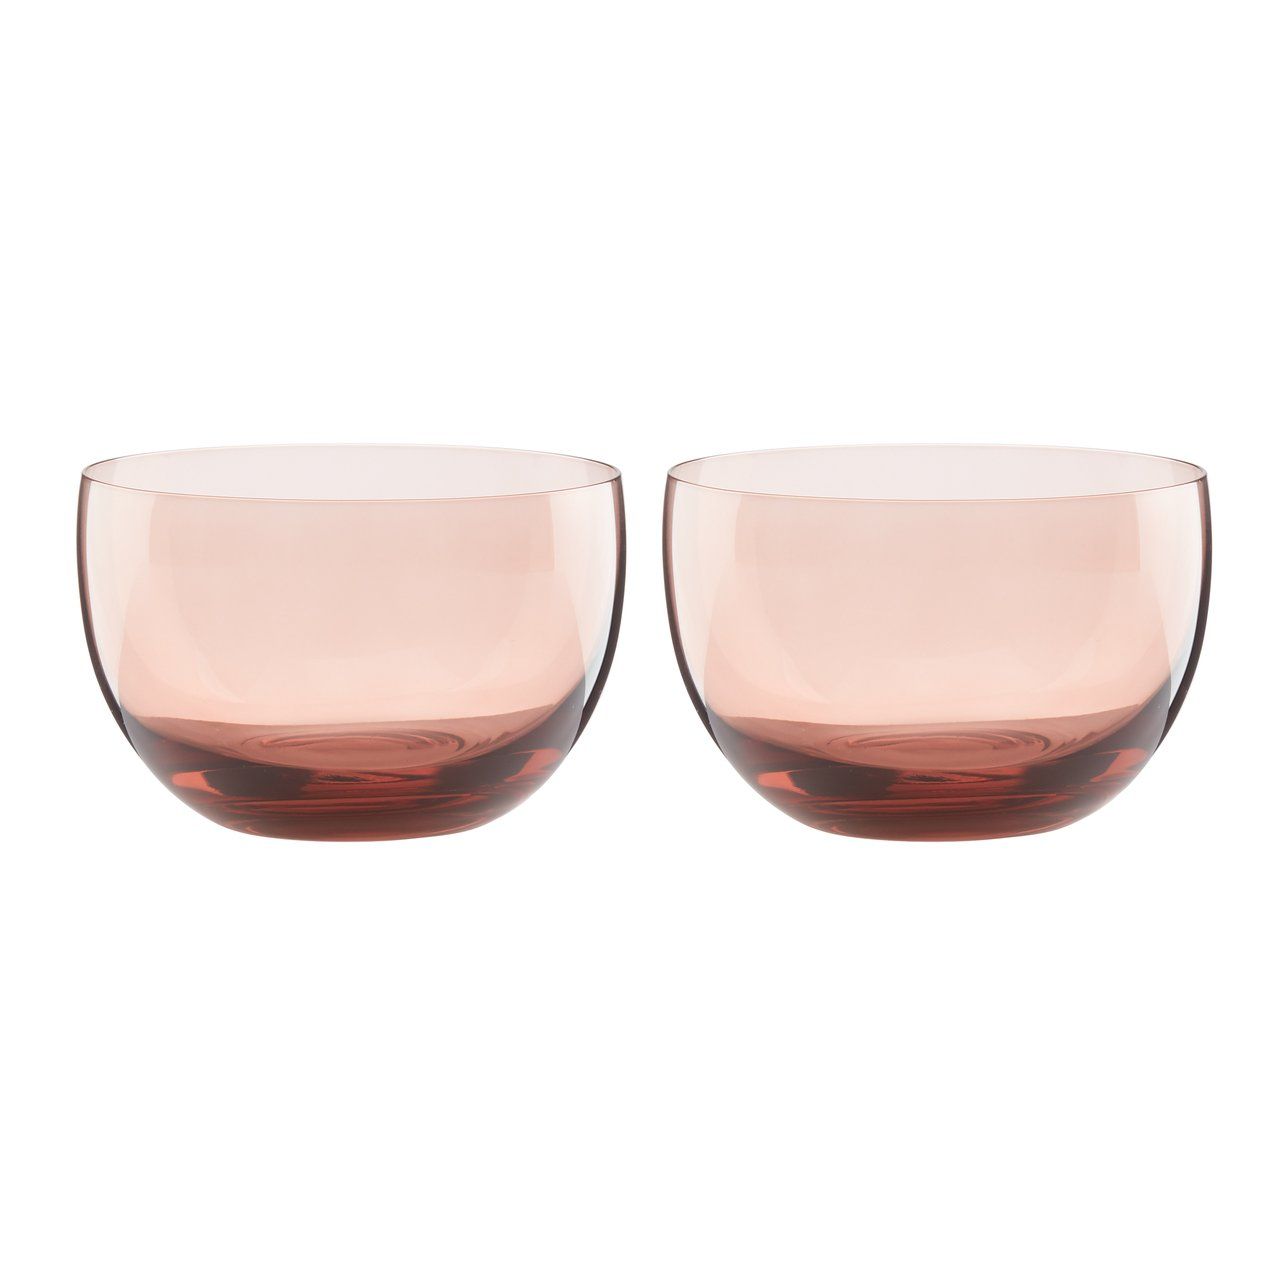 Sprig & Vine 2-Piece Glass Bowl Set